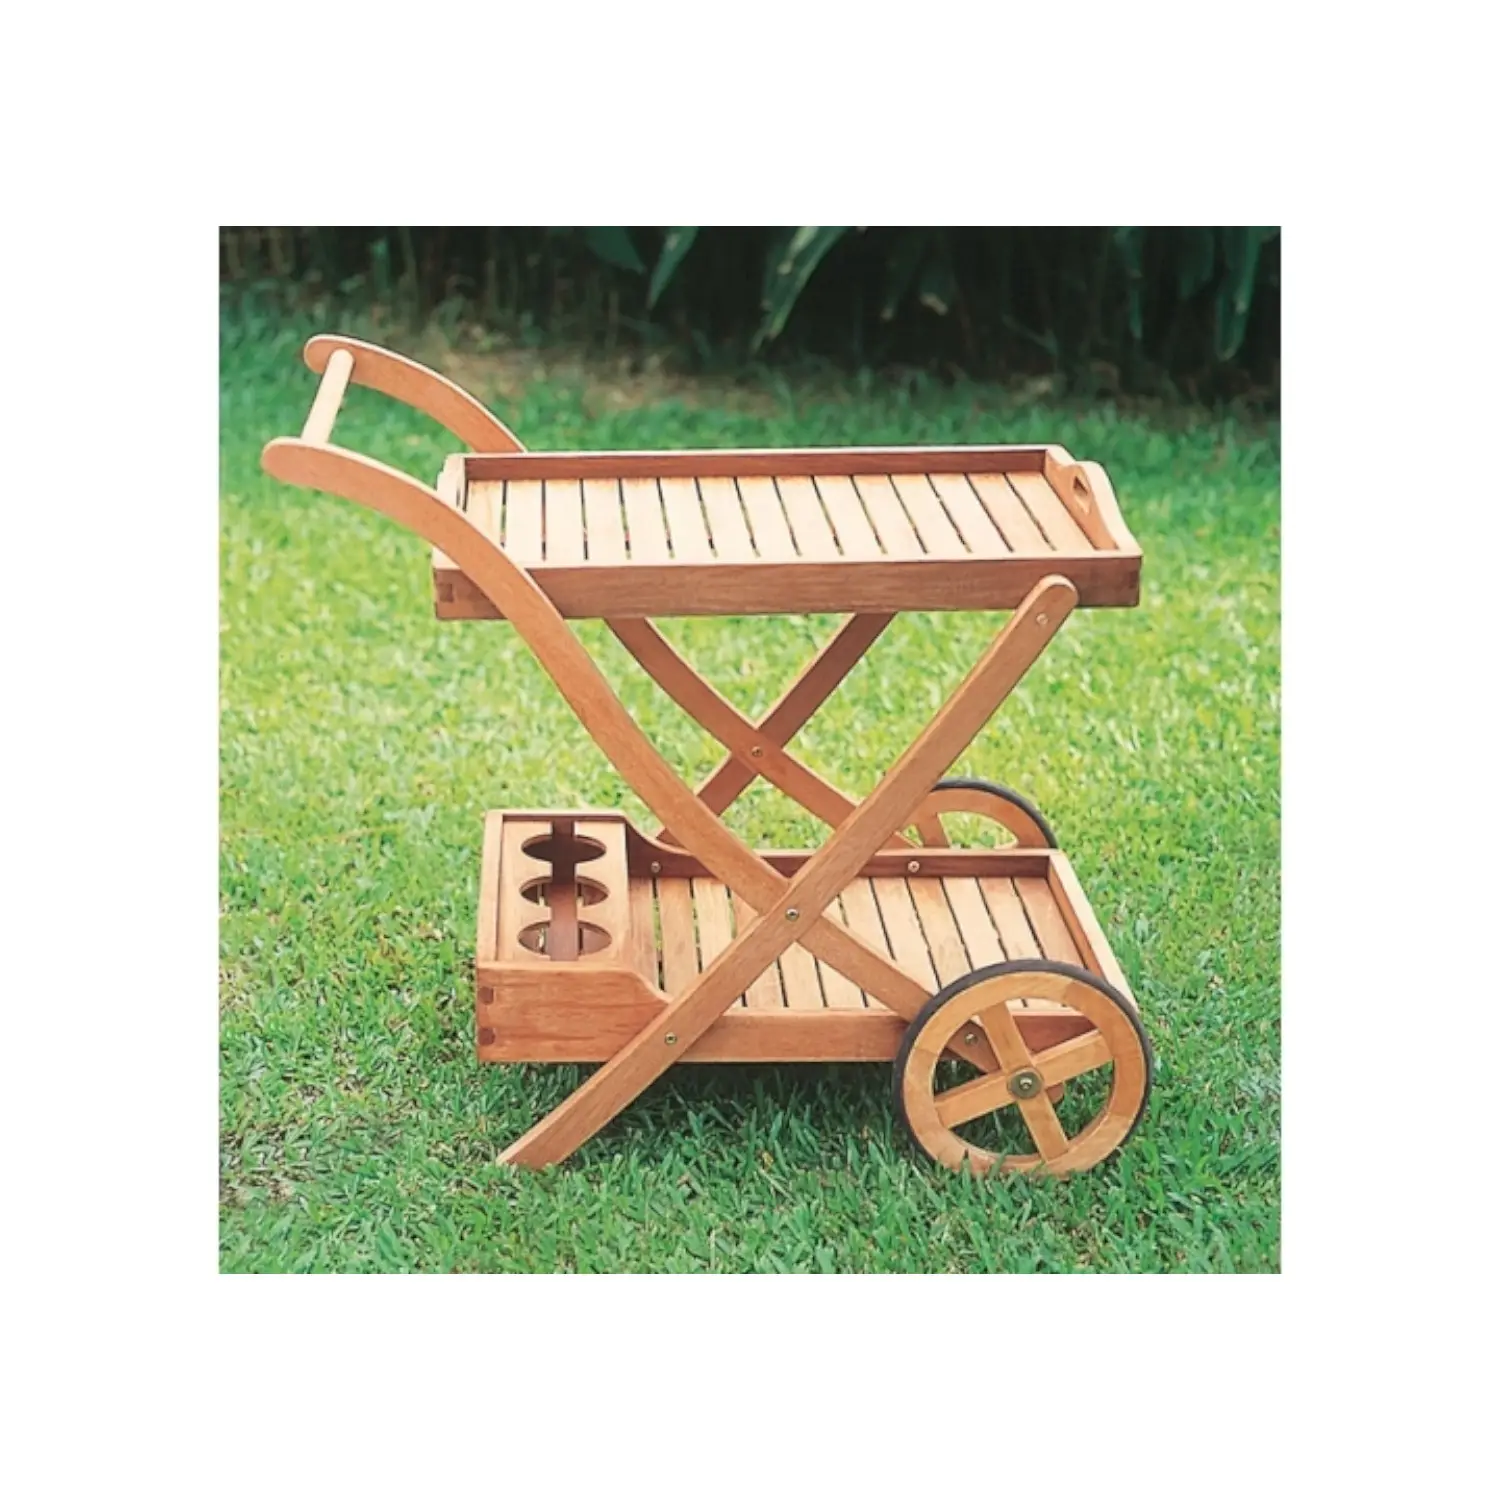 Alta Qualidade Teak Servindo Cart com 3 Tier Wood Bar Servindo Cart com bandeja Carrinho de serviço de madeira com roda para mobília do hotel